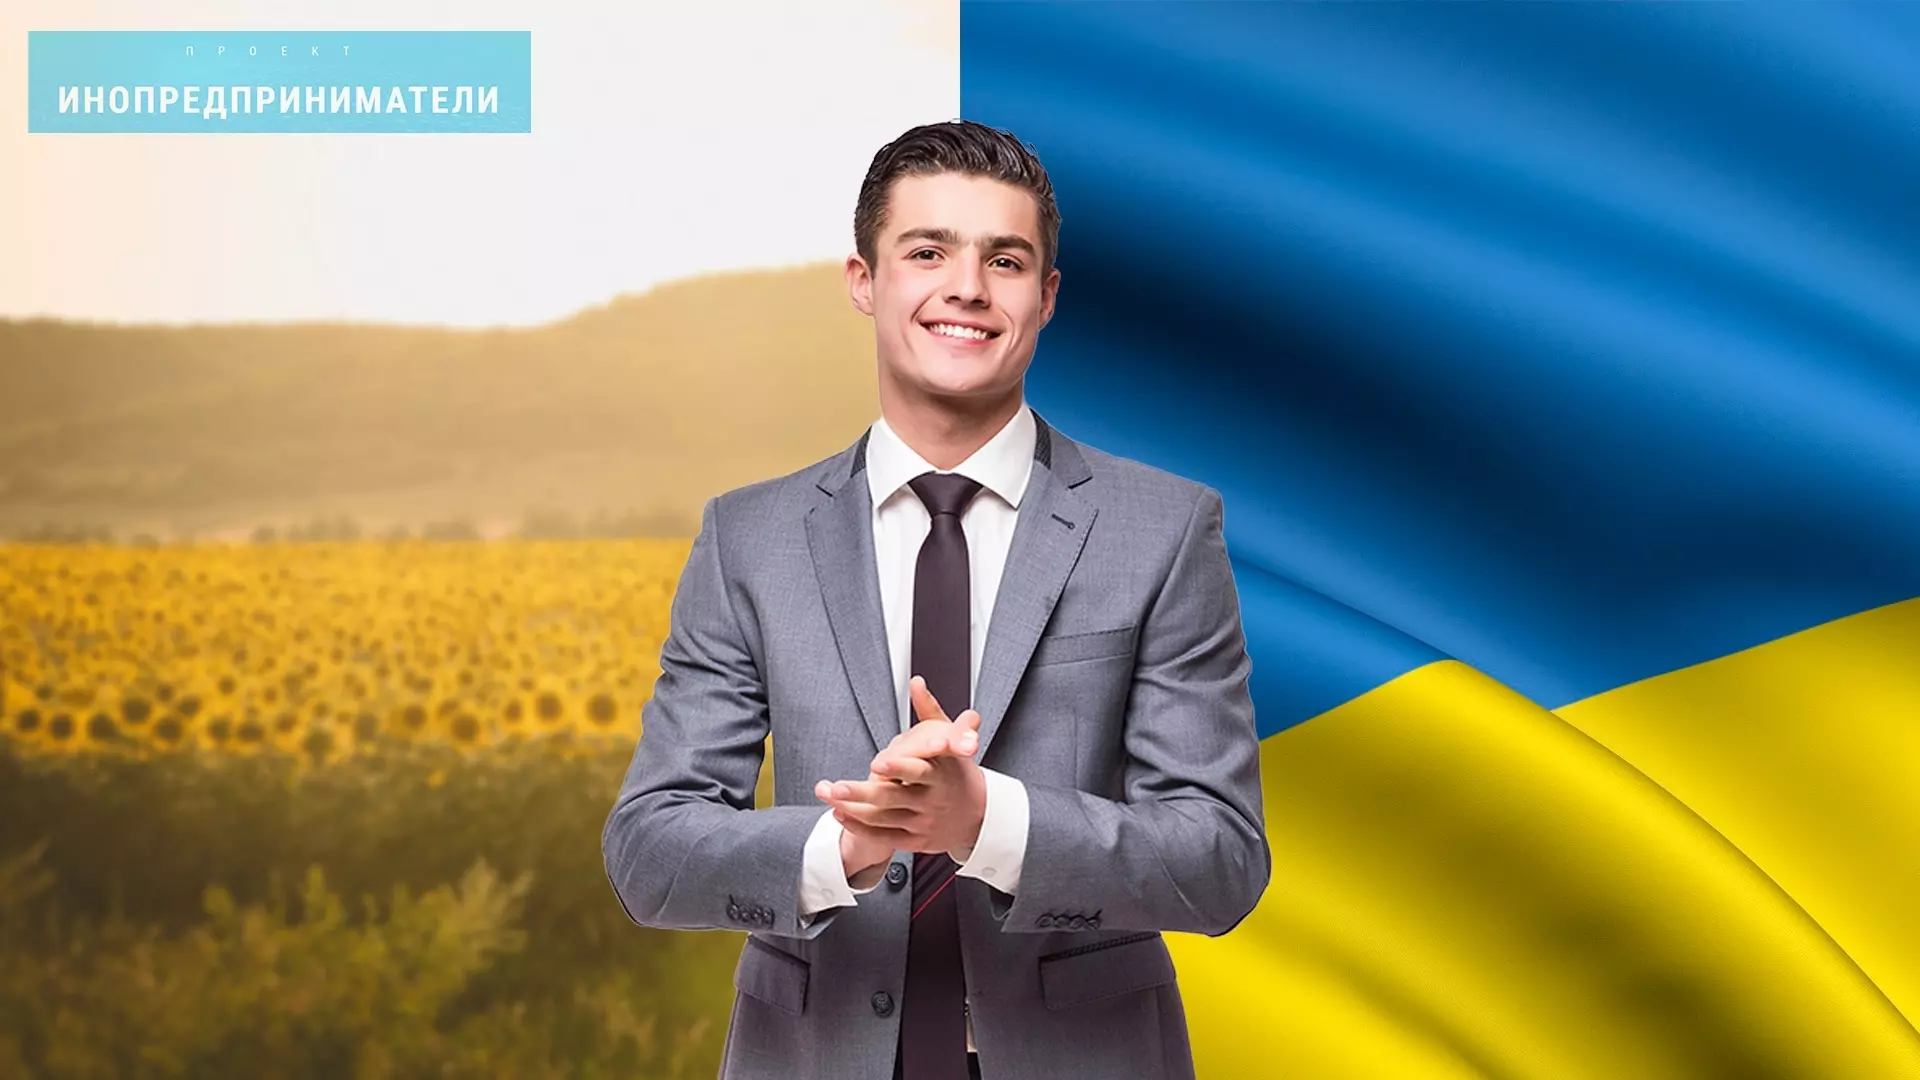 Ничего личного, только бизнес: как украинские компании зарабатывают в Волгограде